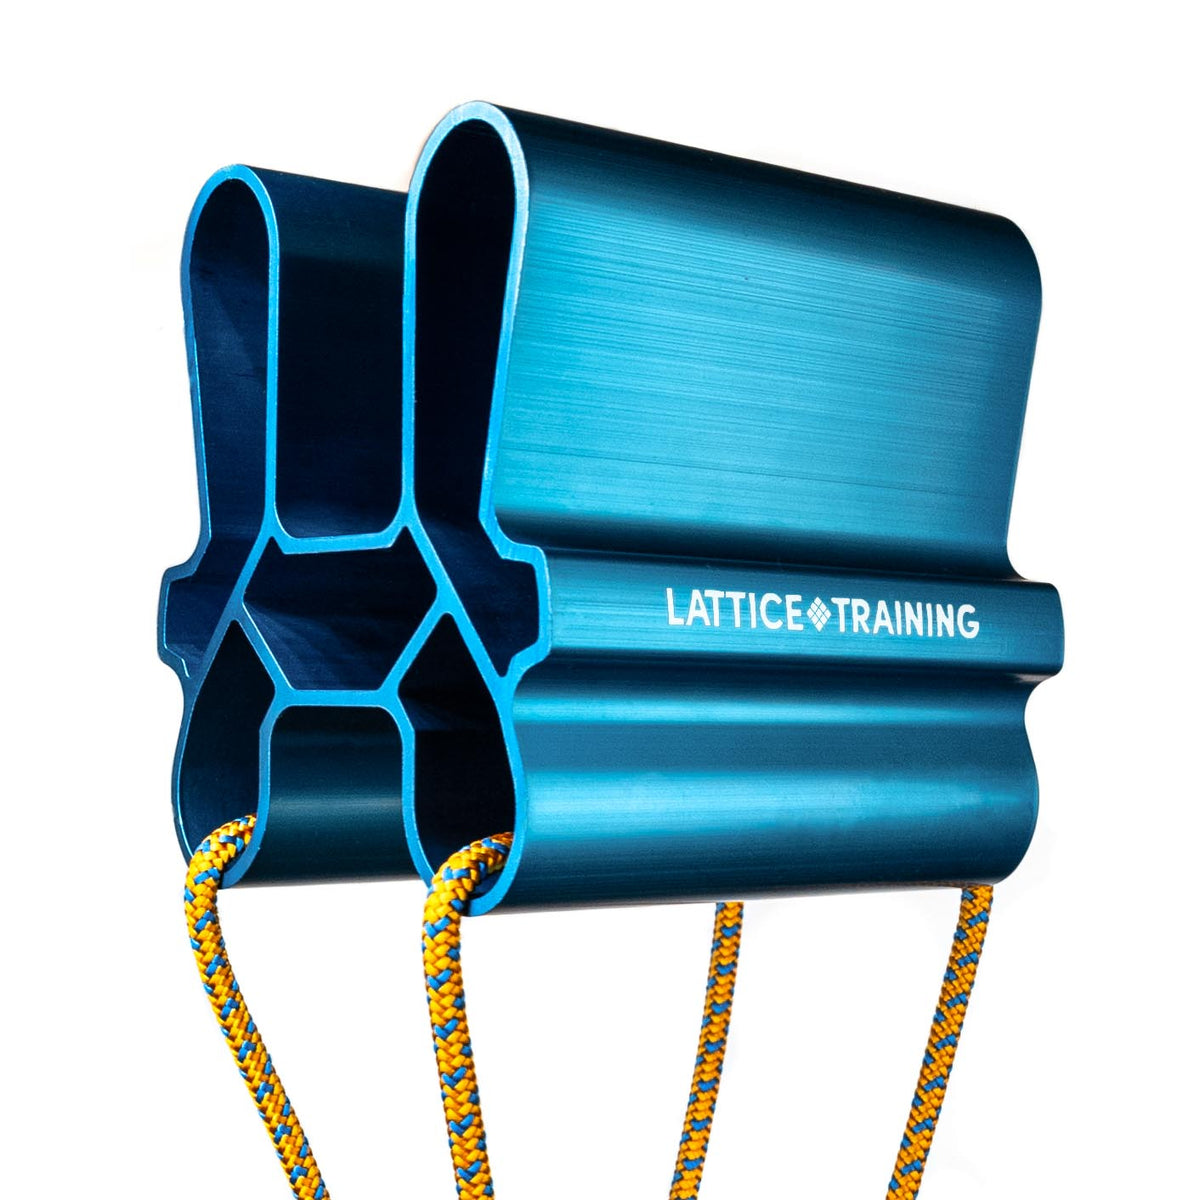 Lattice Quad Block in blue